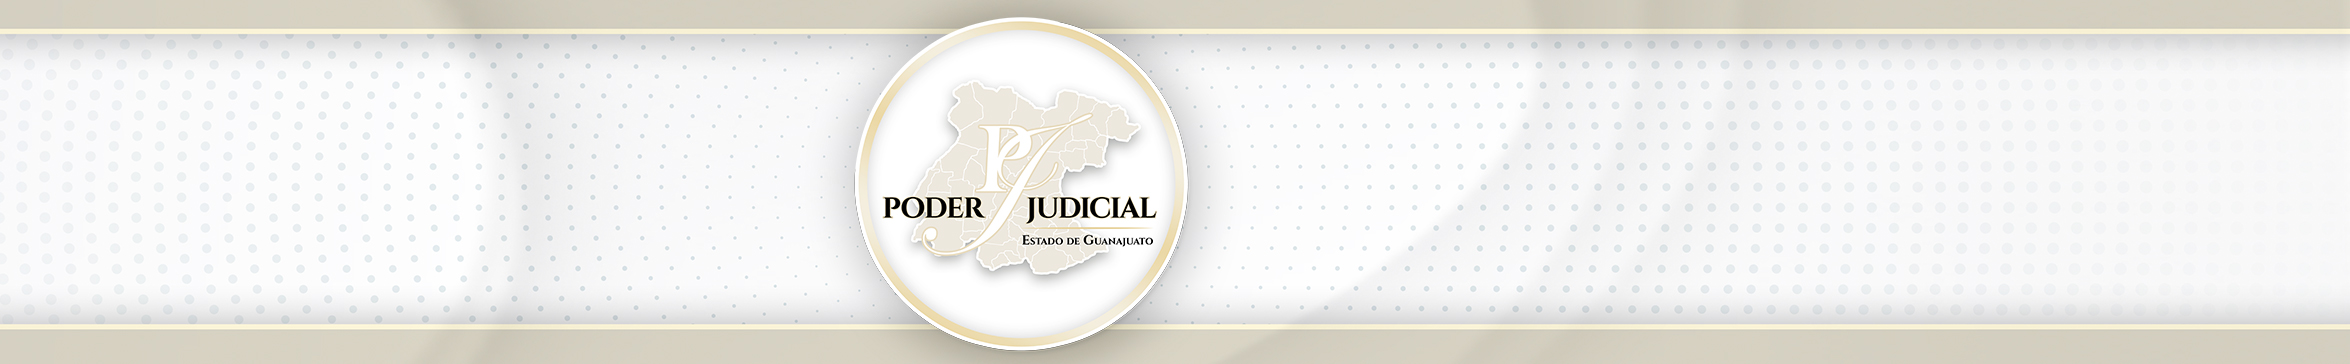 Poder Judicial del Estado de Guanajuato